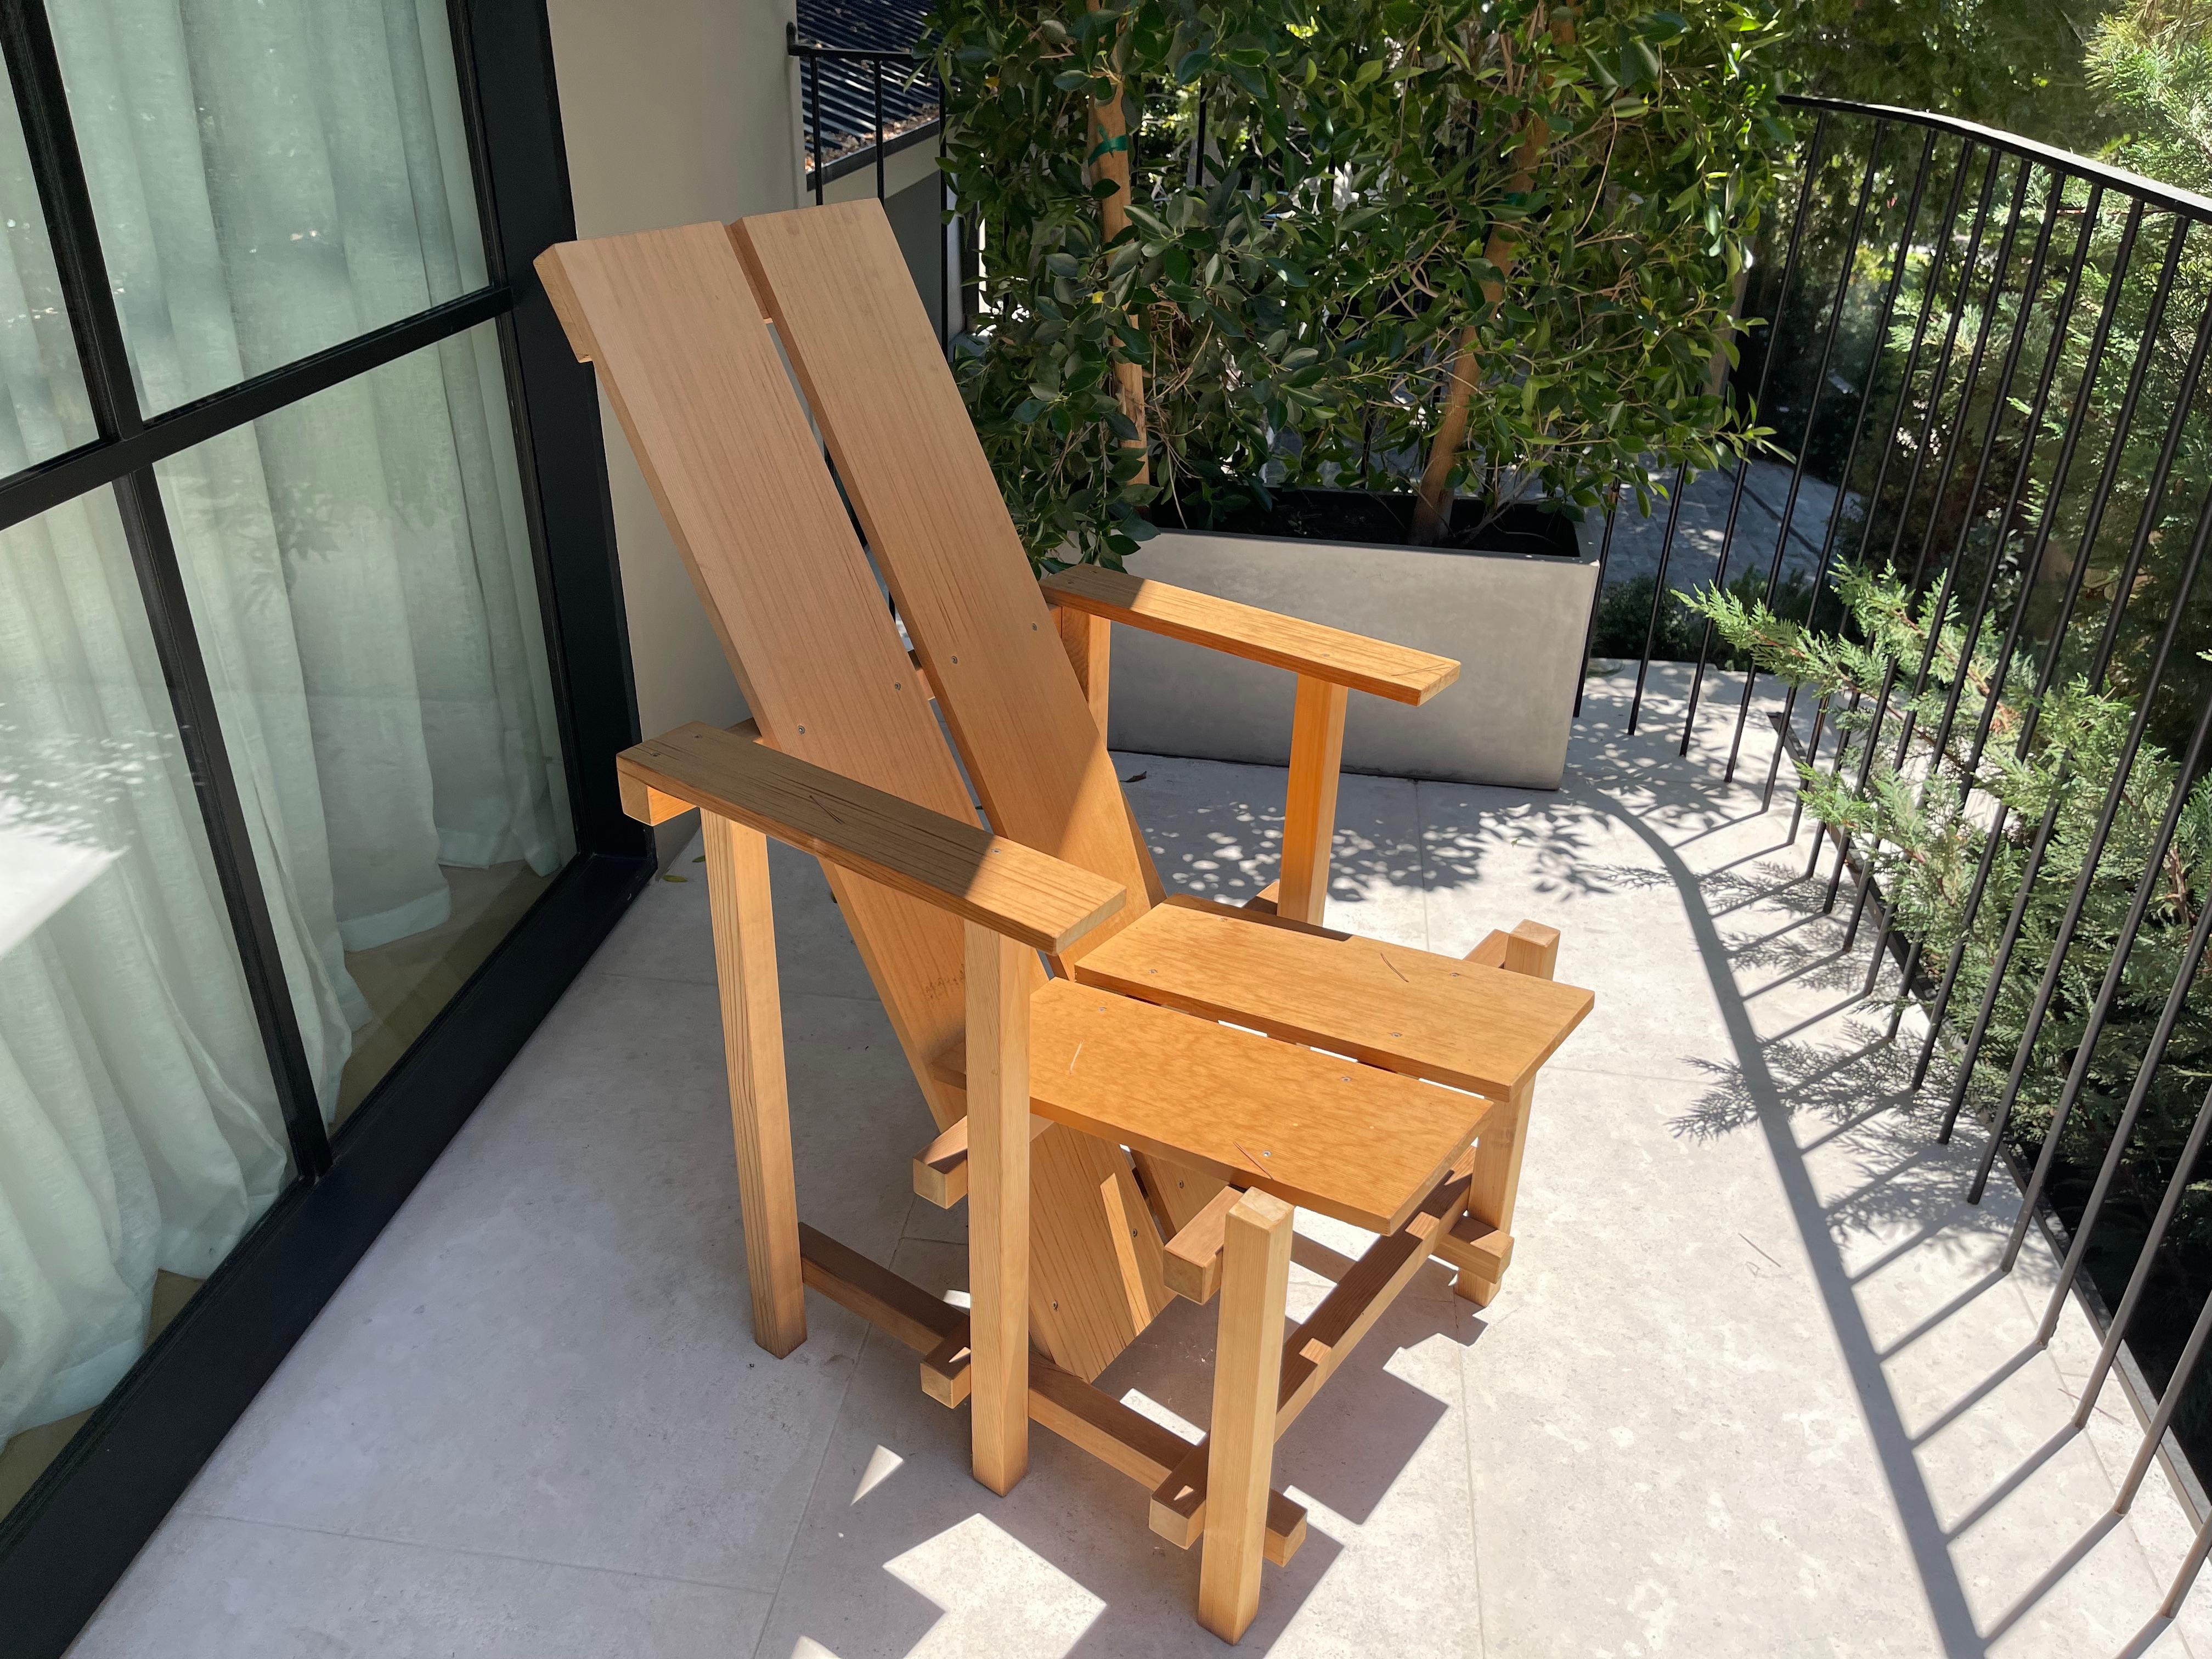 4 Stühle aus Zedernholz für den Außenbereich mit geometrischen Winkeln und sichtbaren Nagellöchern, inspiriert von Gerrit Rietveld.